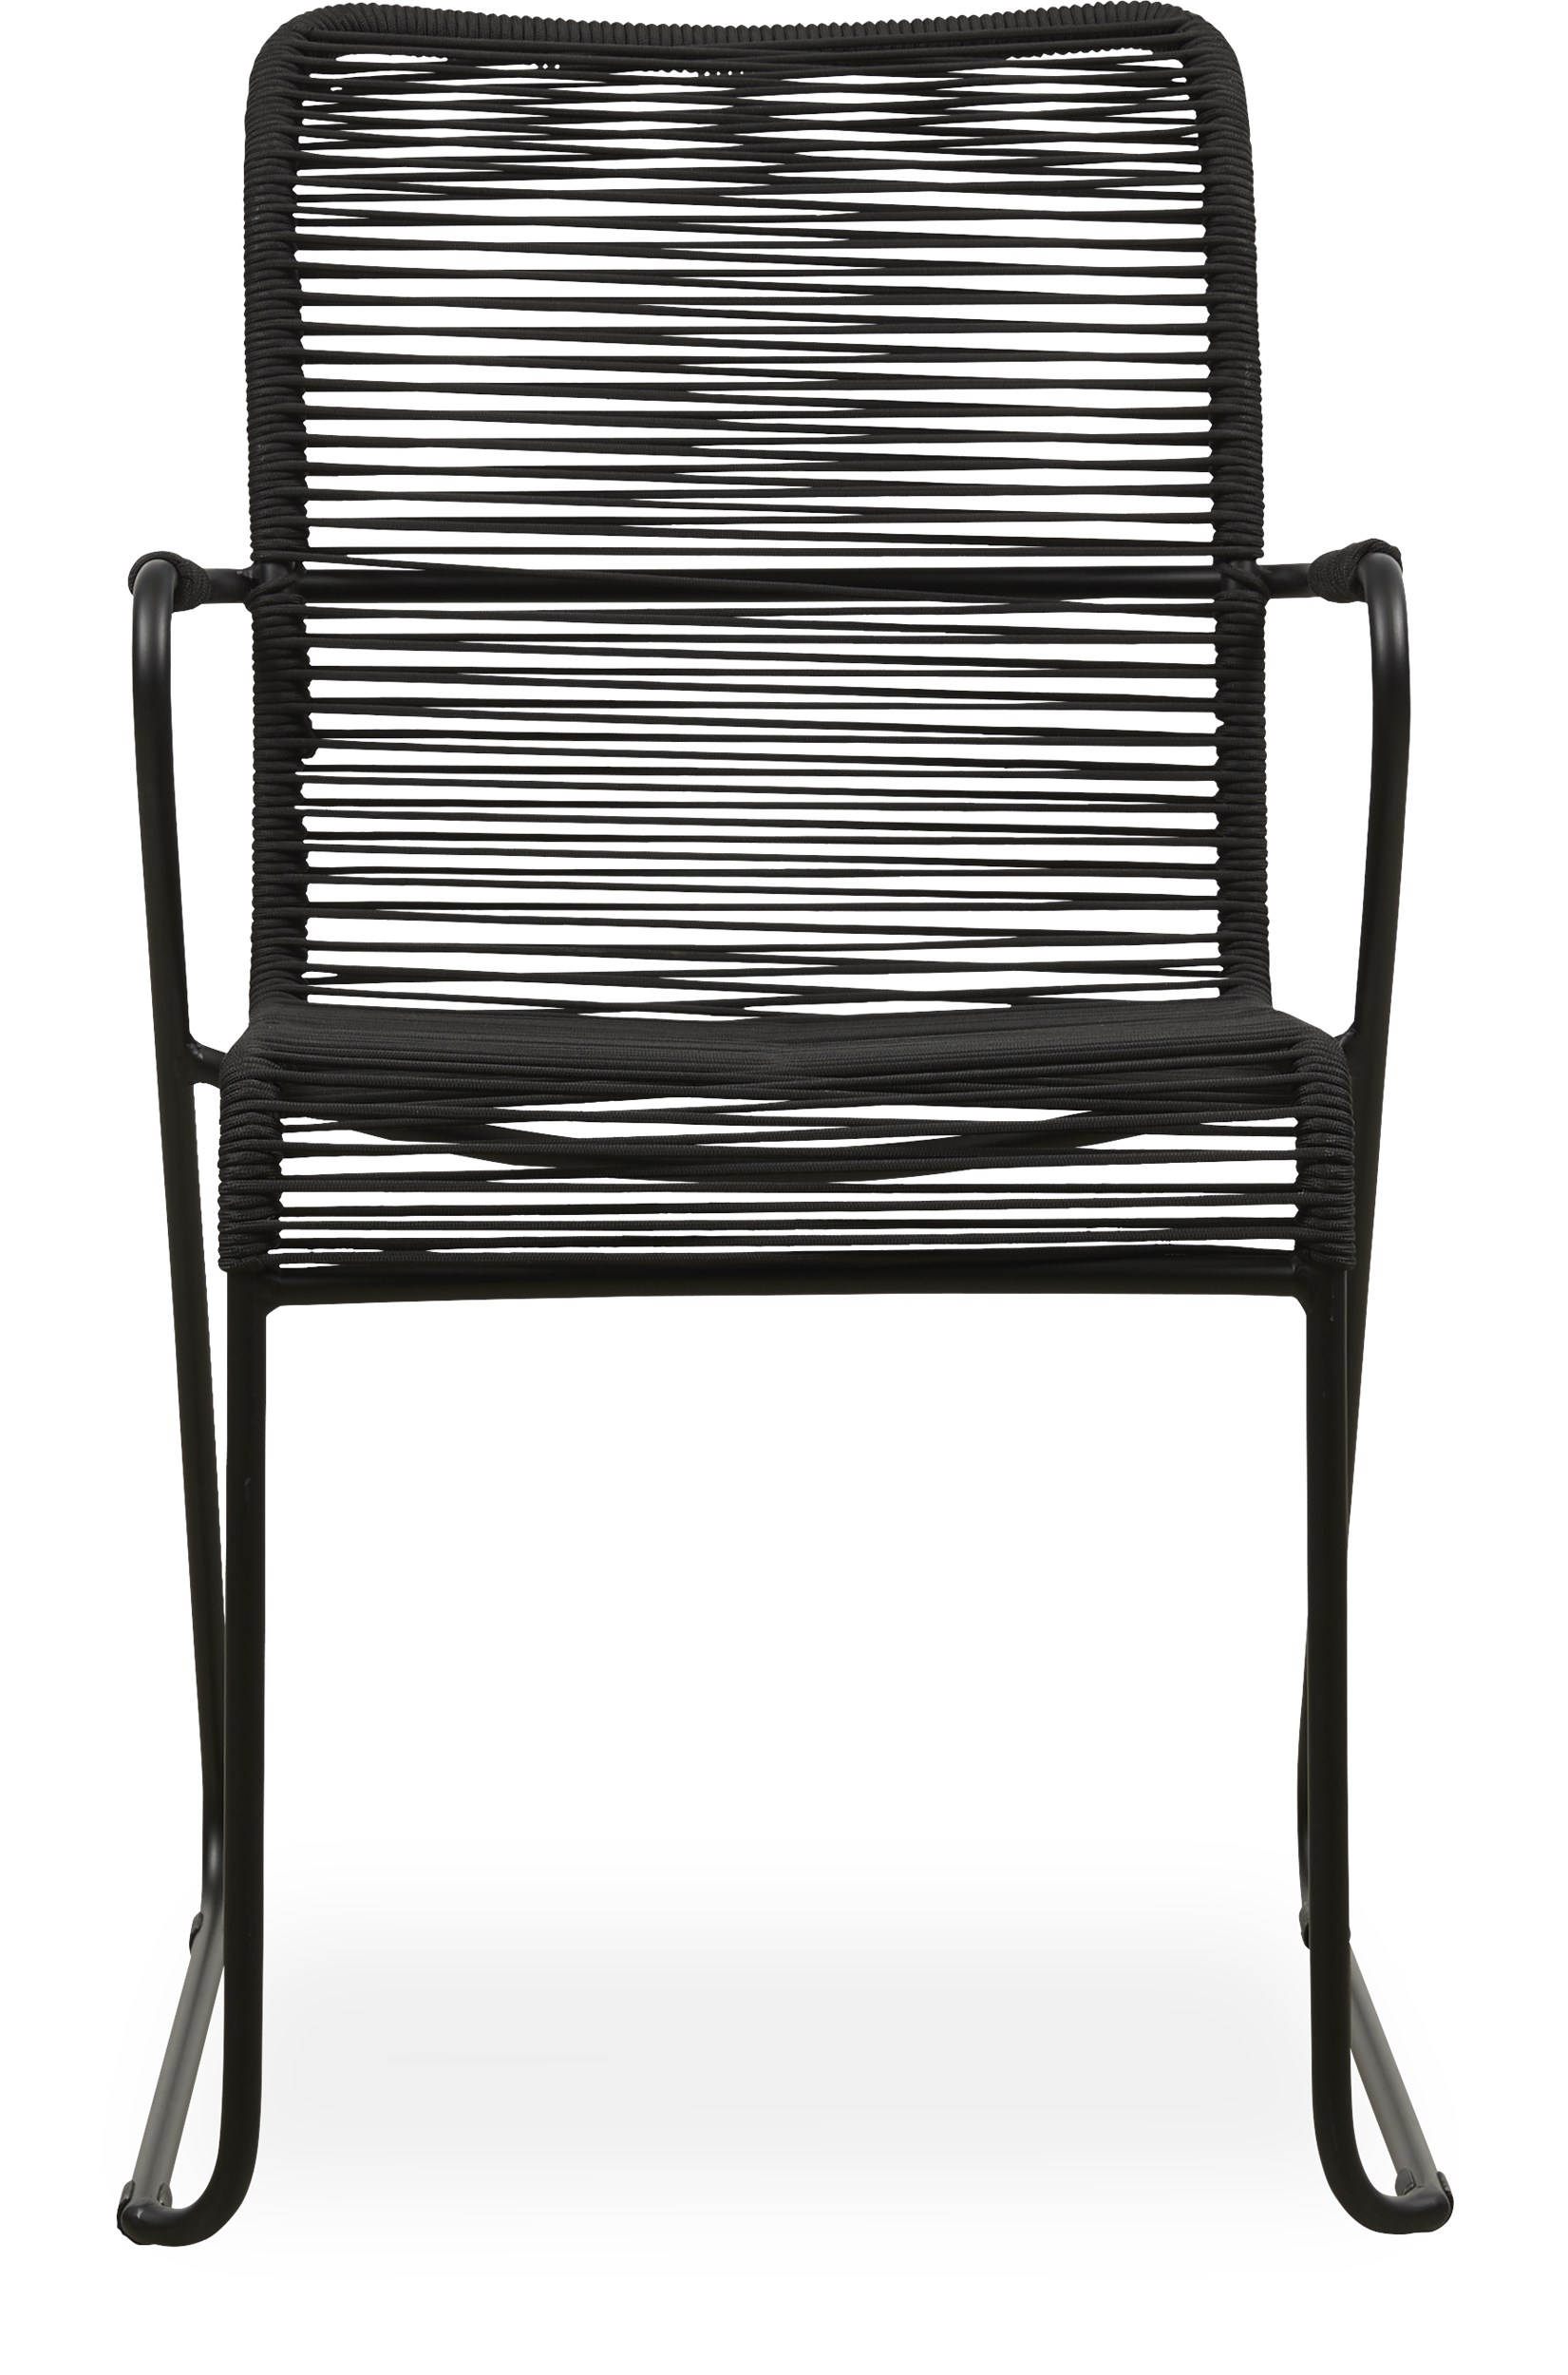 Branco Trädgårdsstol - Stolsrygg i svart rep och stomme i svartmålad stål